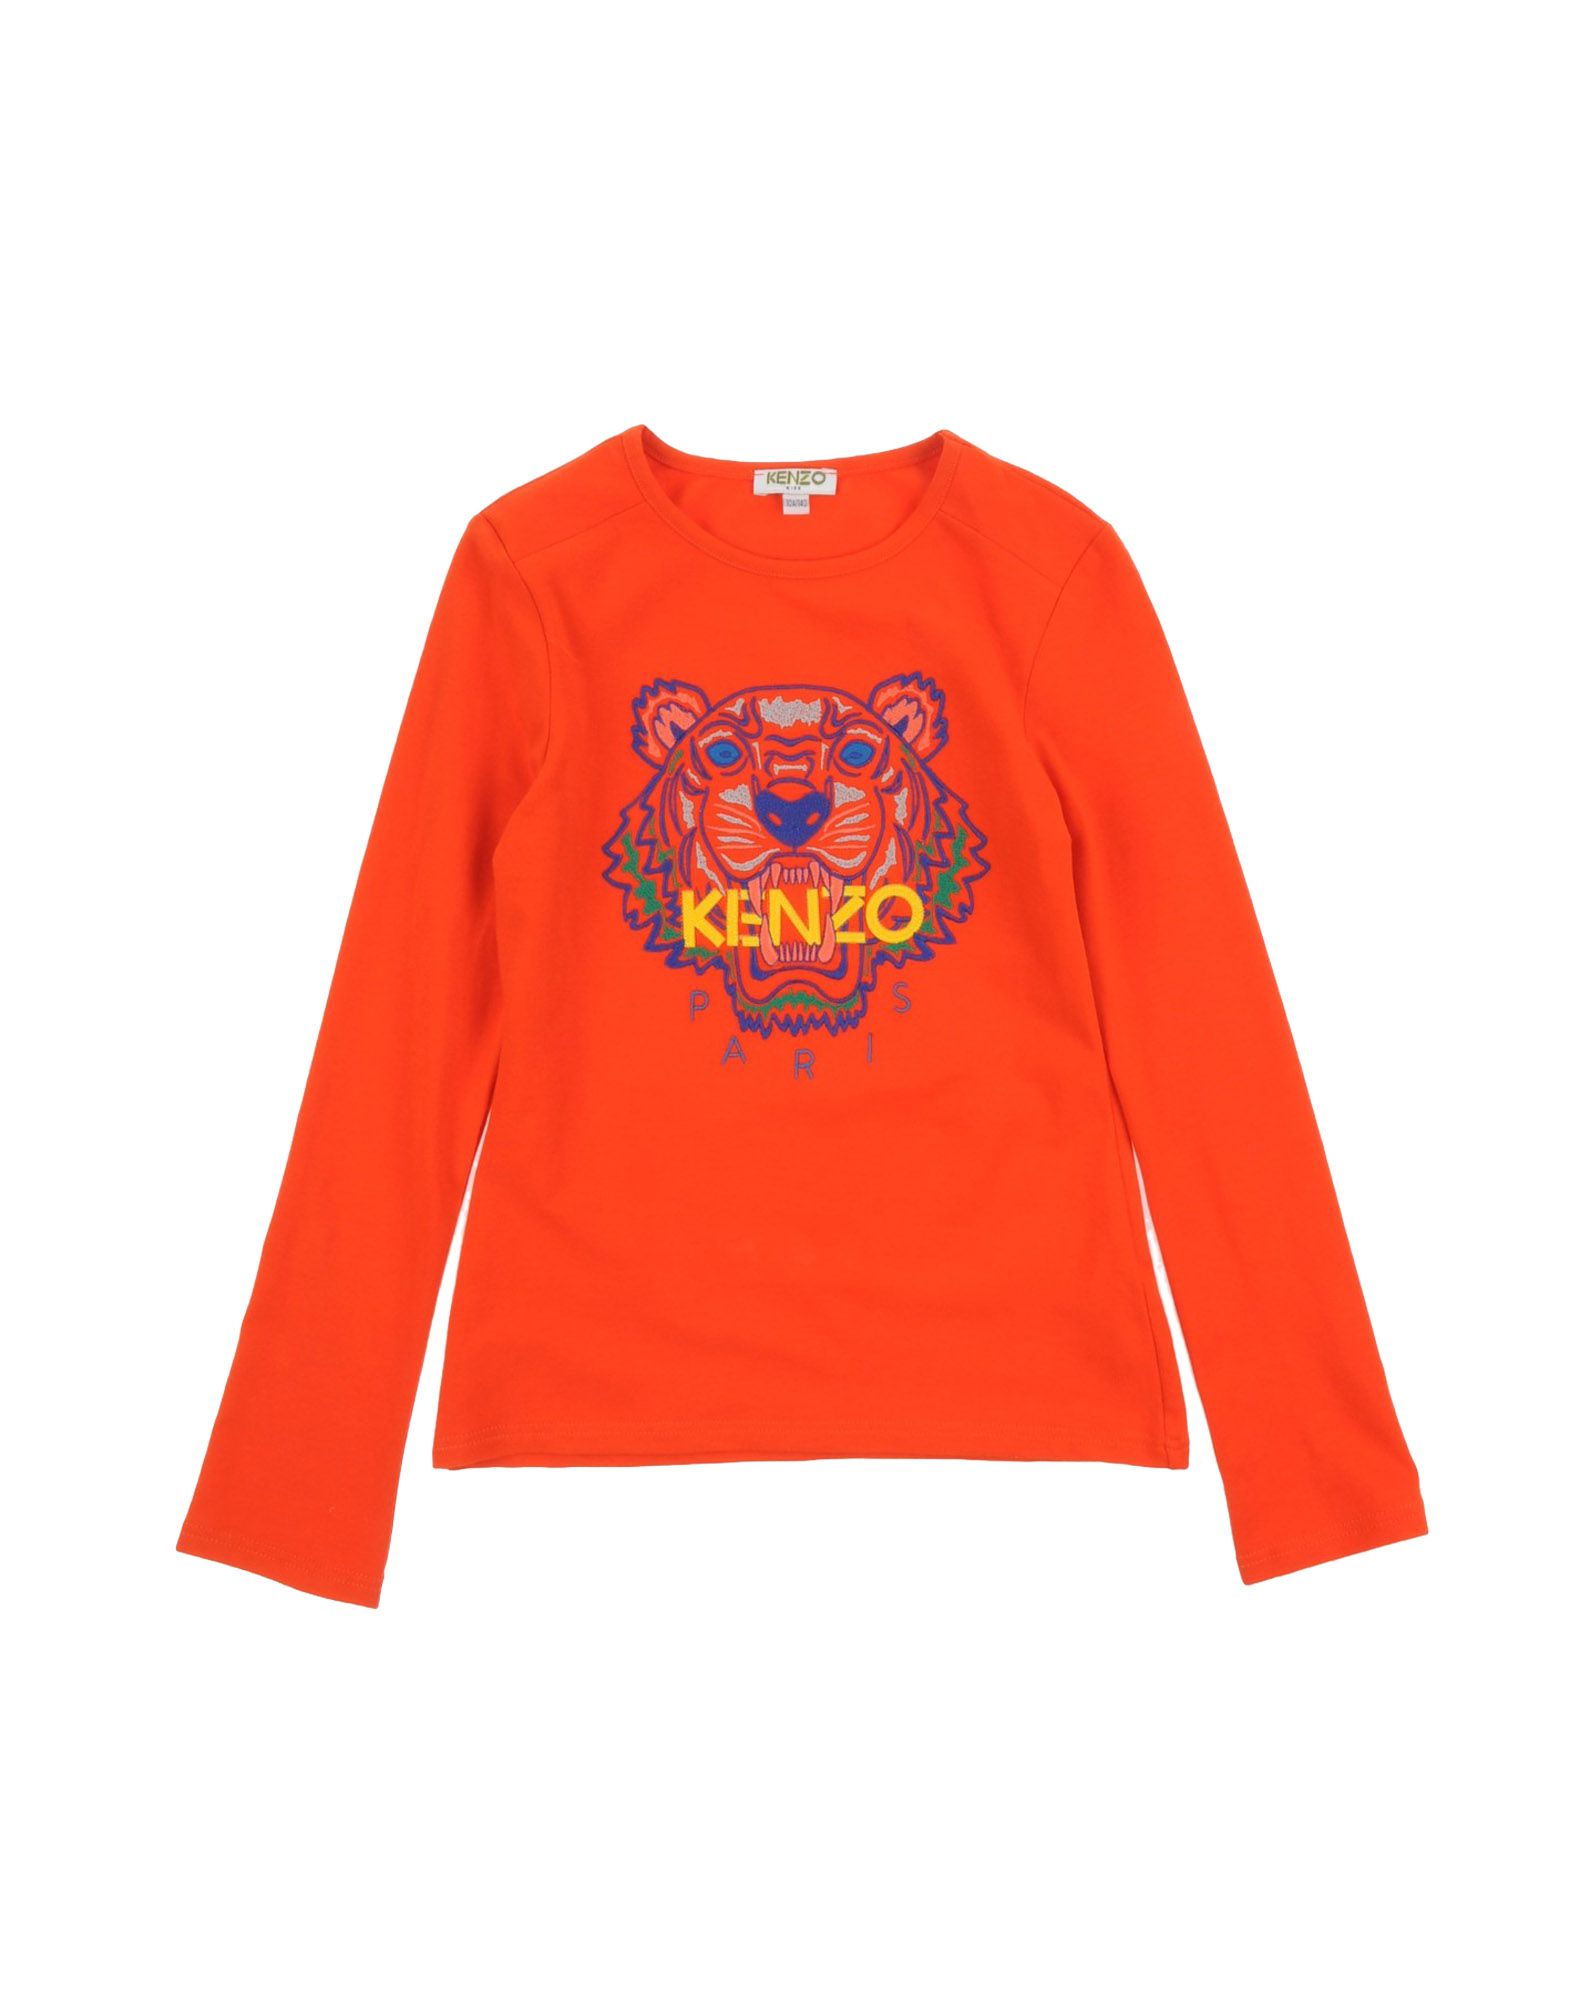 Foto Kenzo Kids Camisetas De Manga Larga Niña Naranja